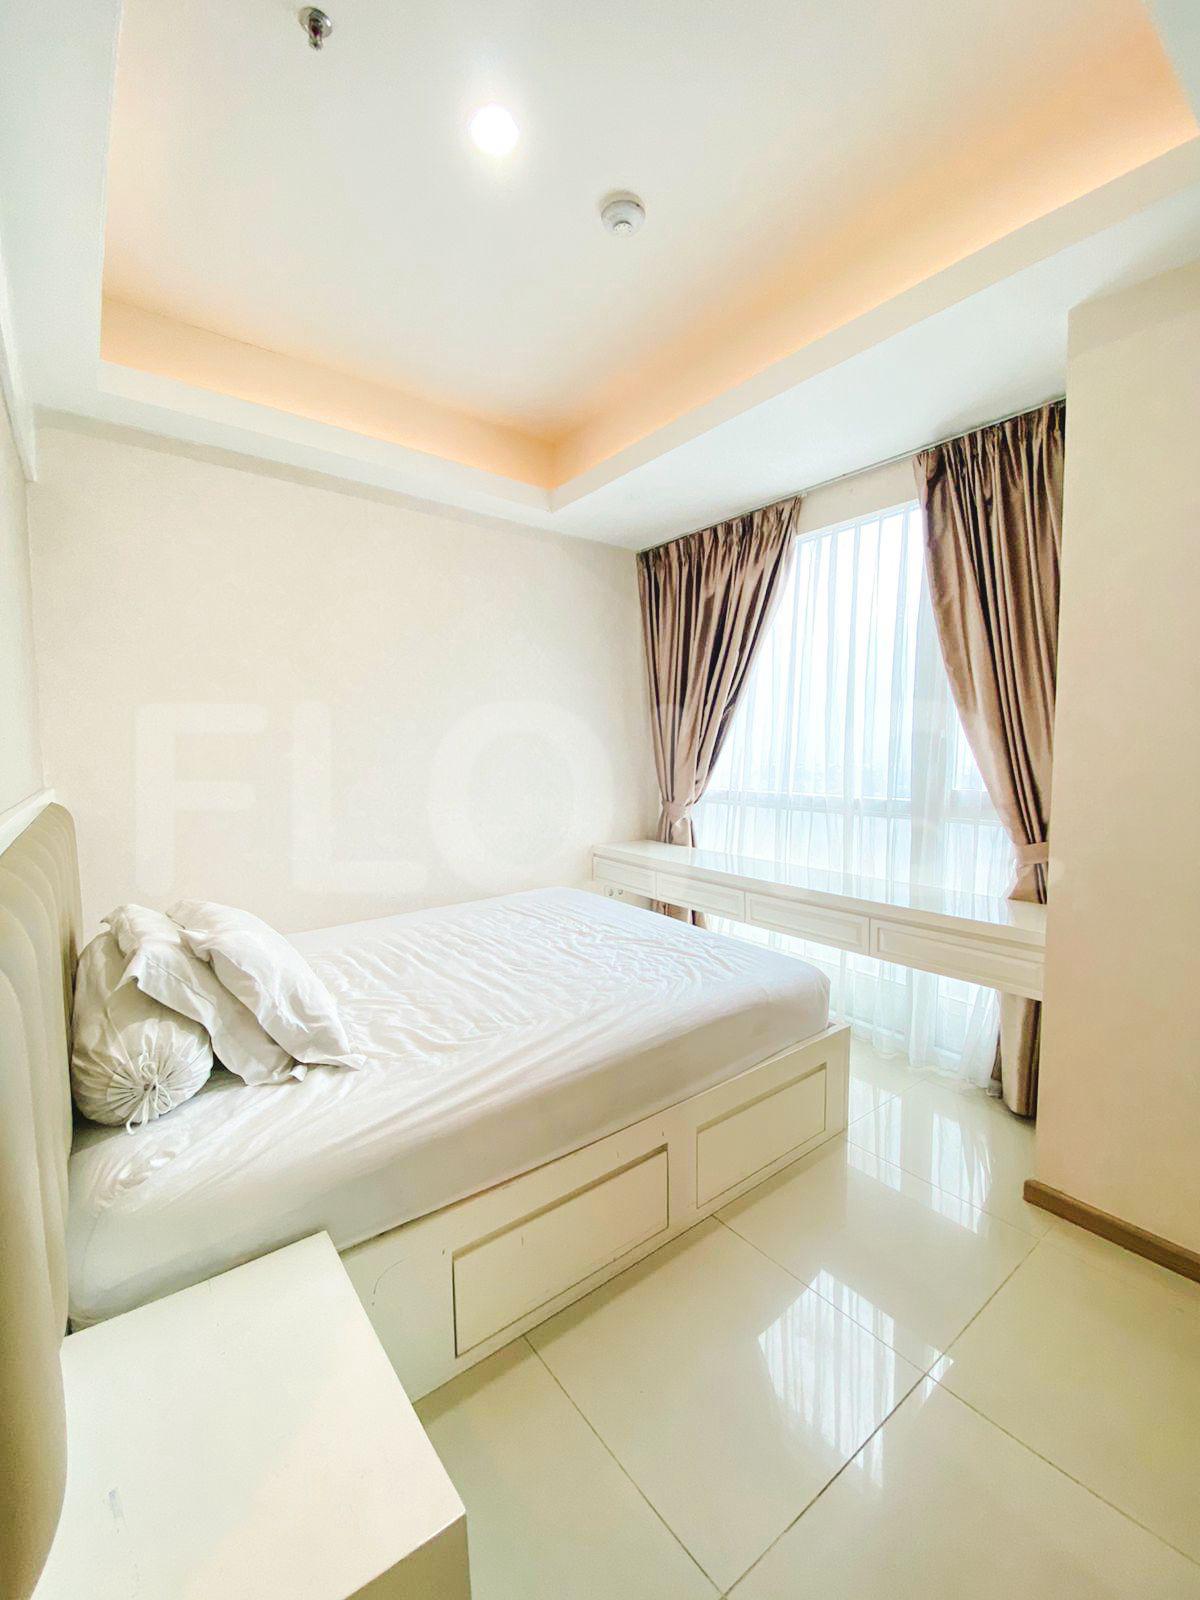 3 Bedroom on 17th Floor fte656 for Rent in Casa Grande